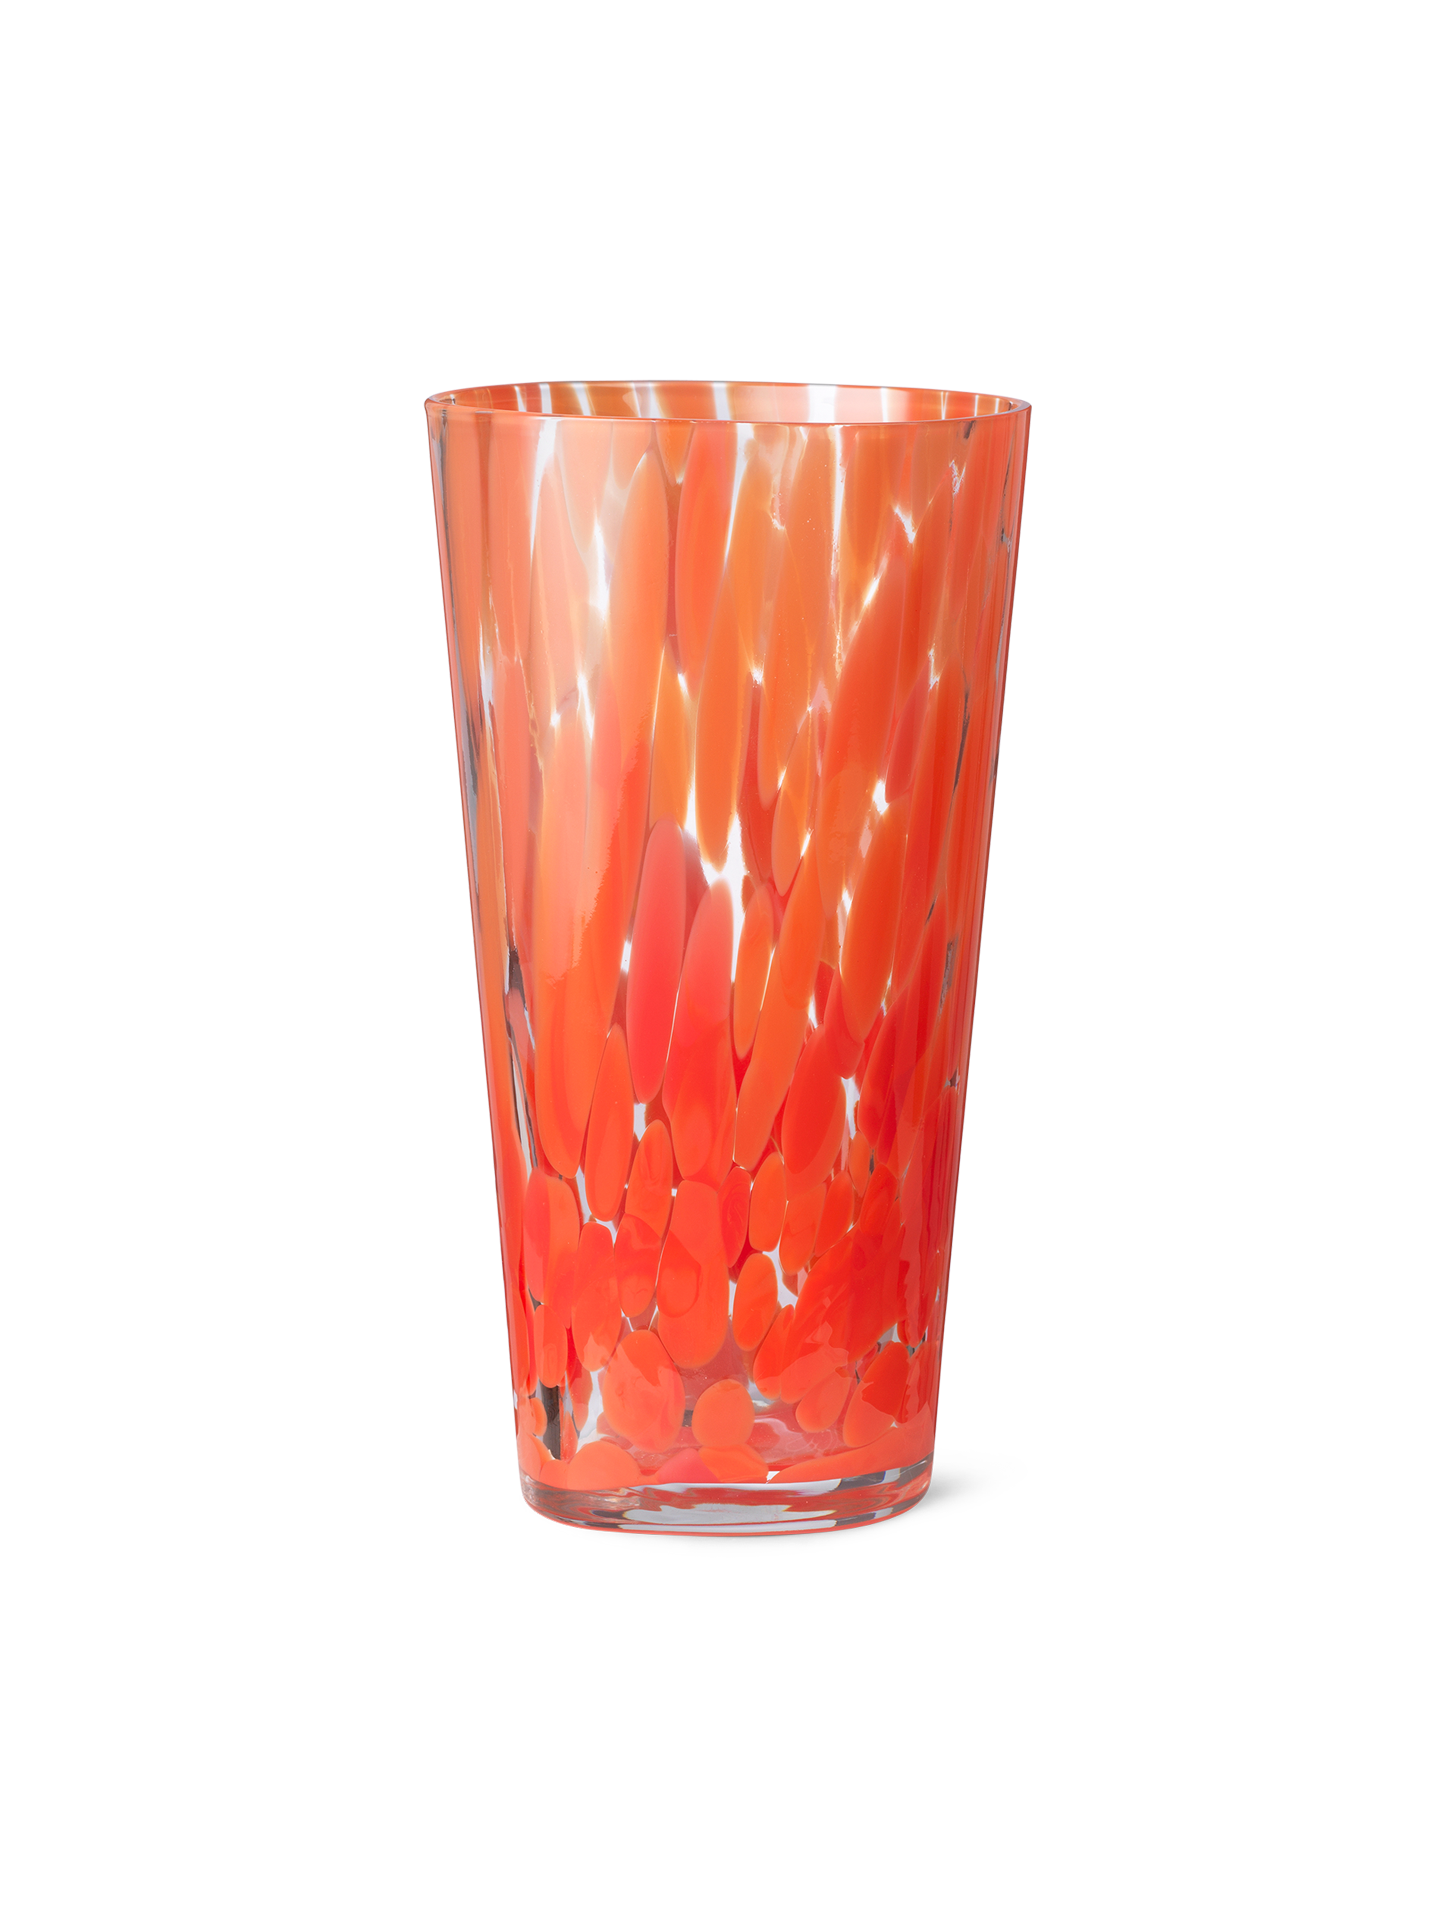 Casca Vase - Poppy Red